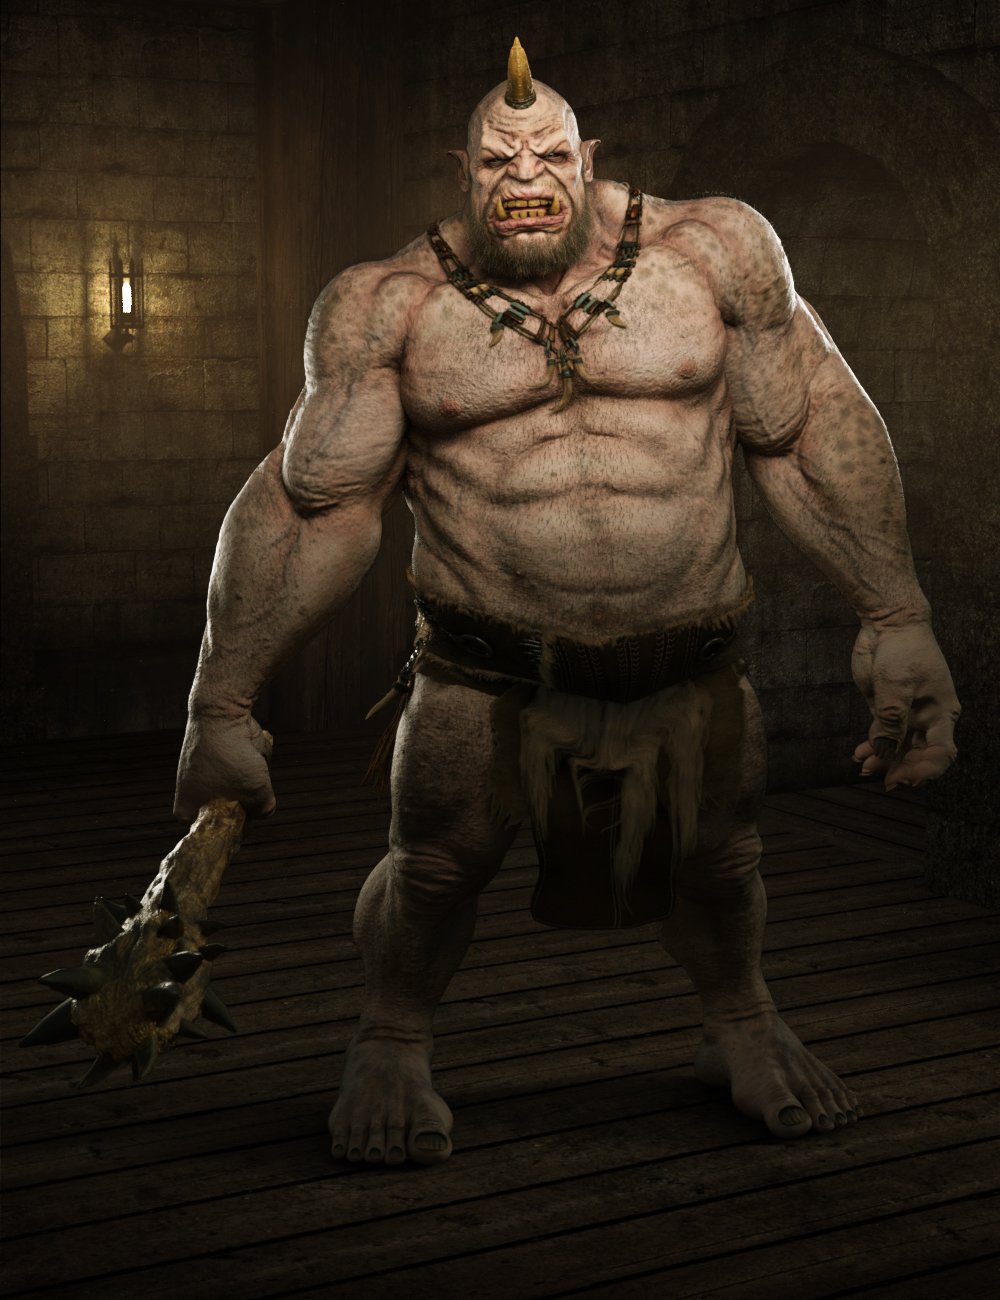 Ogre HD for Genesis 8 Male by: Josh Crockett, 3D Models by Daz 3D